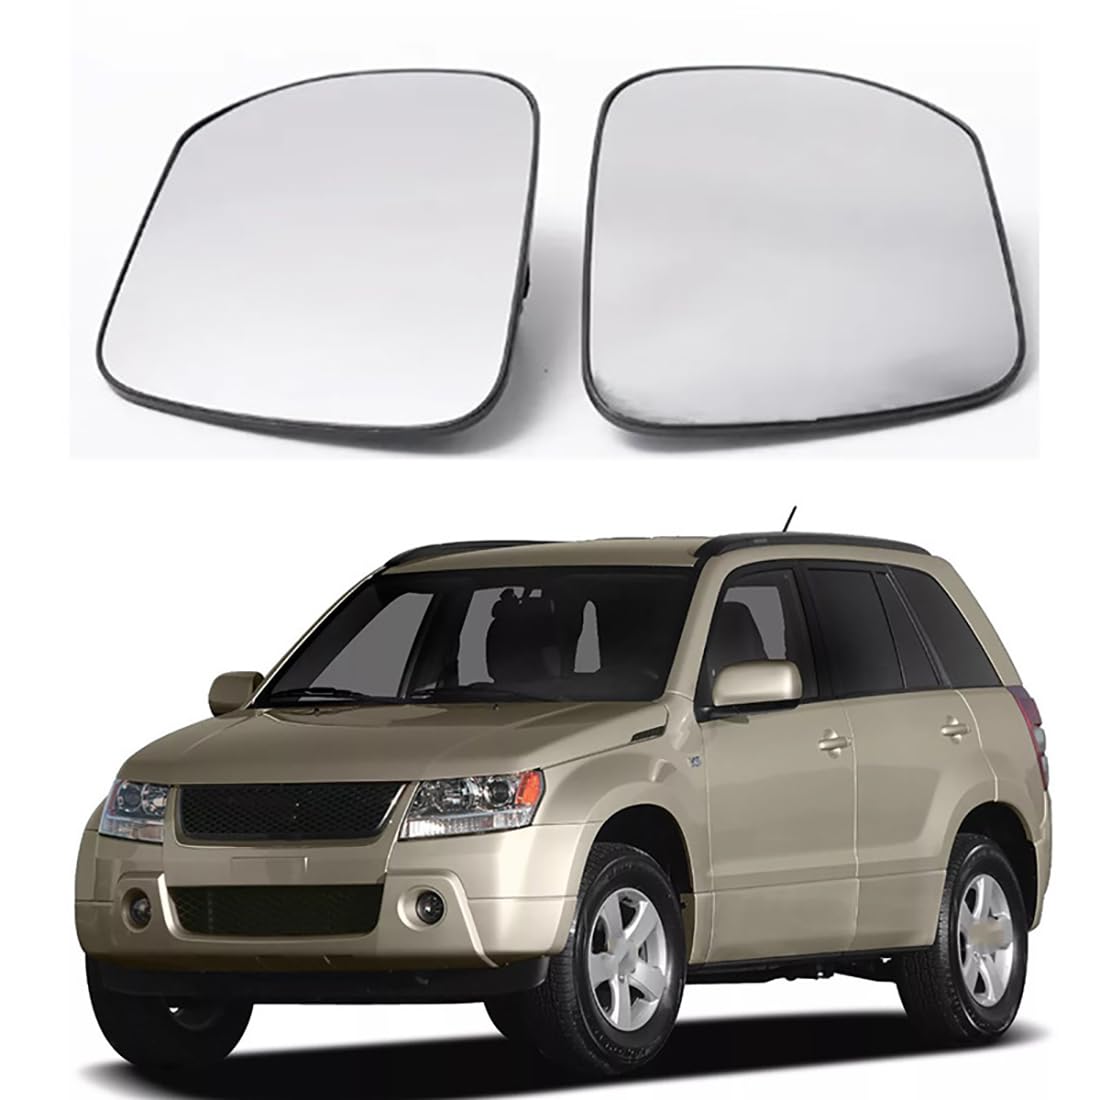 Austauschbarer Auto-Außenspiegel aus Beheizbarem Glas für SUZUKI GRAND VITARA 2005-2015,beheizbarer Rückspiegel für Fahrer und Beifahrer Links/rechts,B-Right von YujieNB